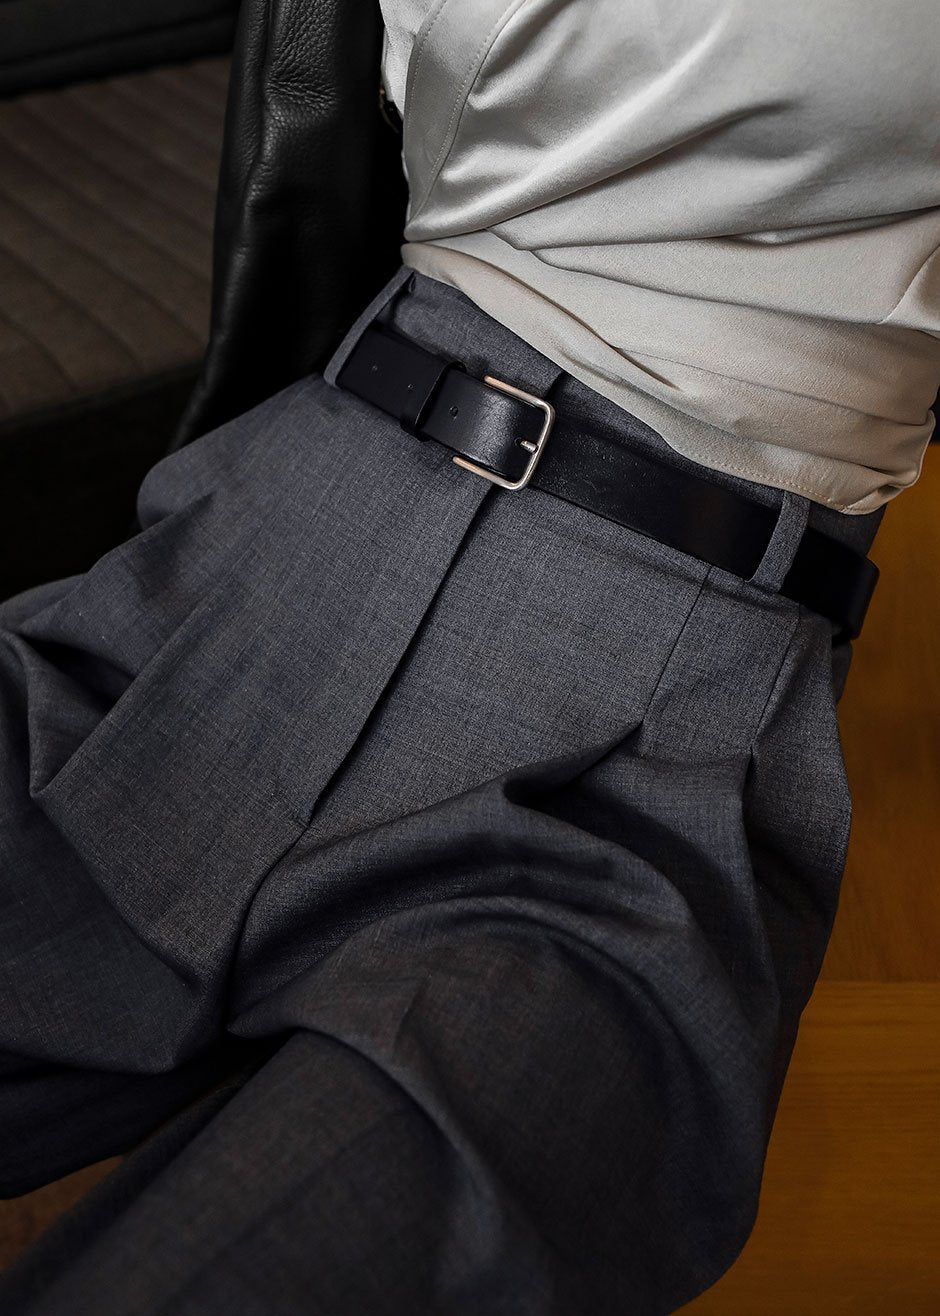 Storets grey trousers  Grey trousers, Trousers, Clothes design